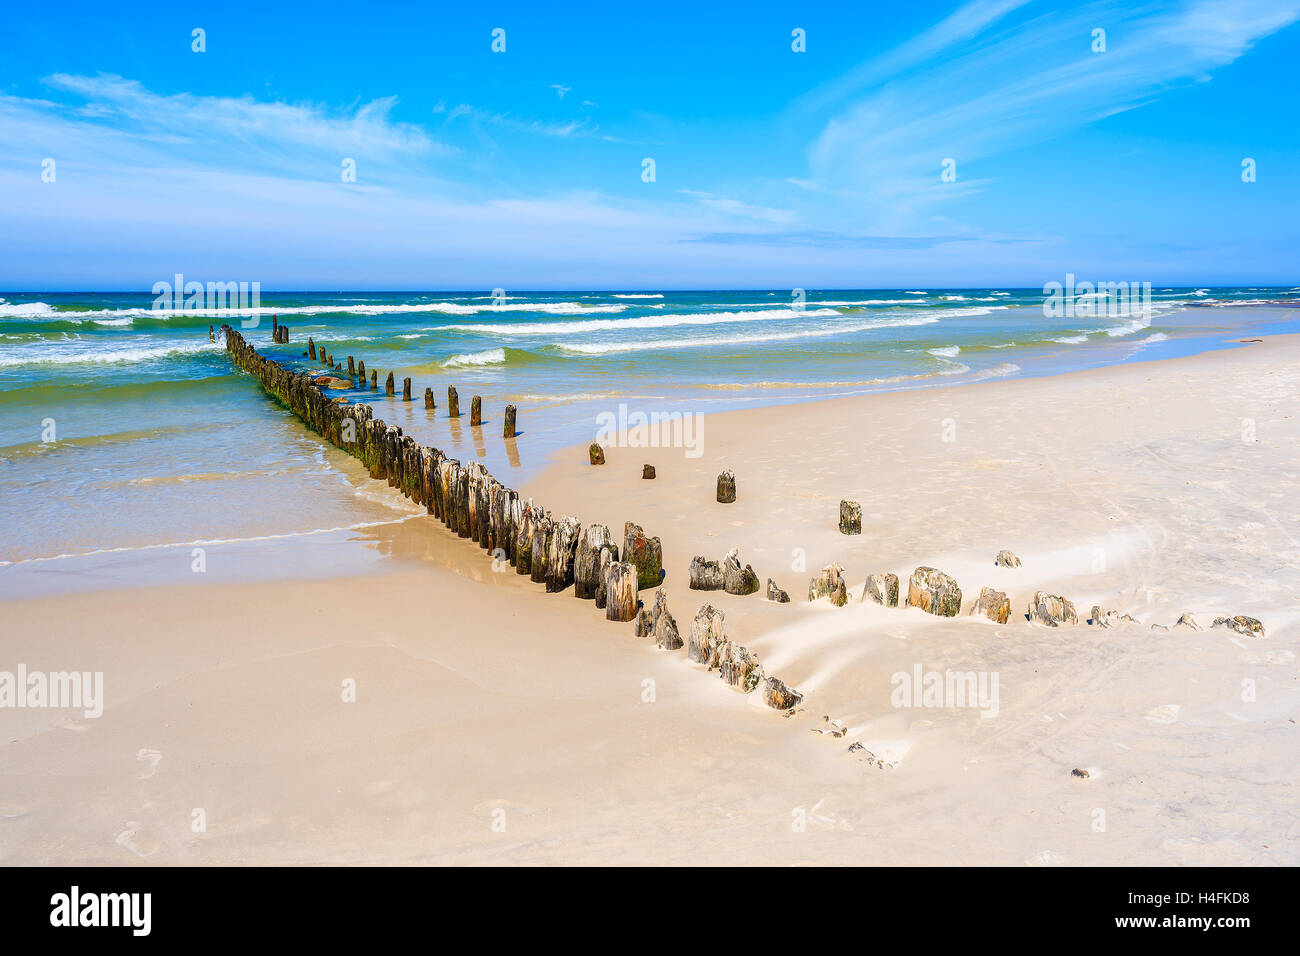 Una vista della bellissima spiaggia di frangiflutti nel villaggio di Debki, Mar Baltico, Polonia Foto Stock